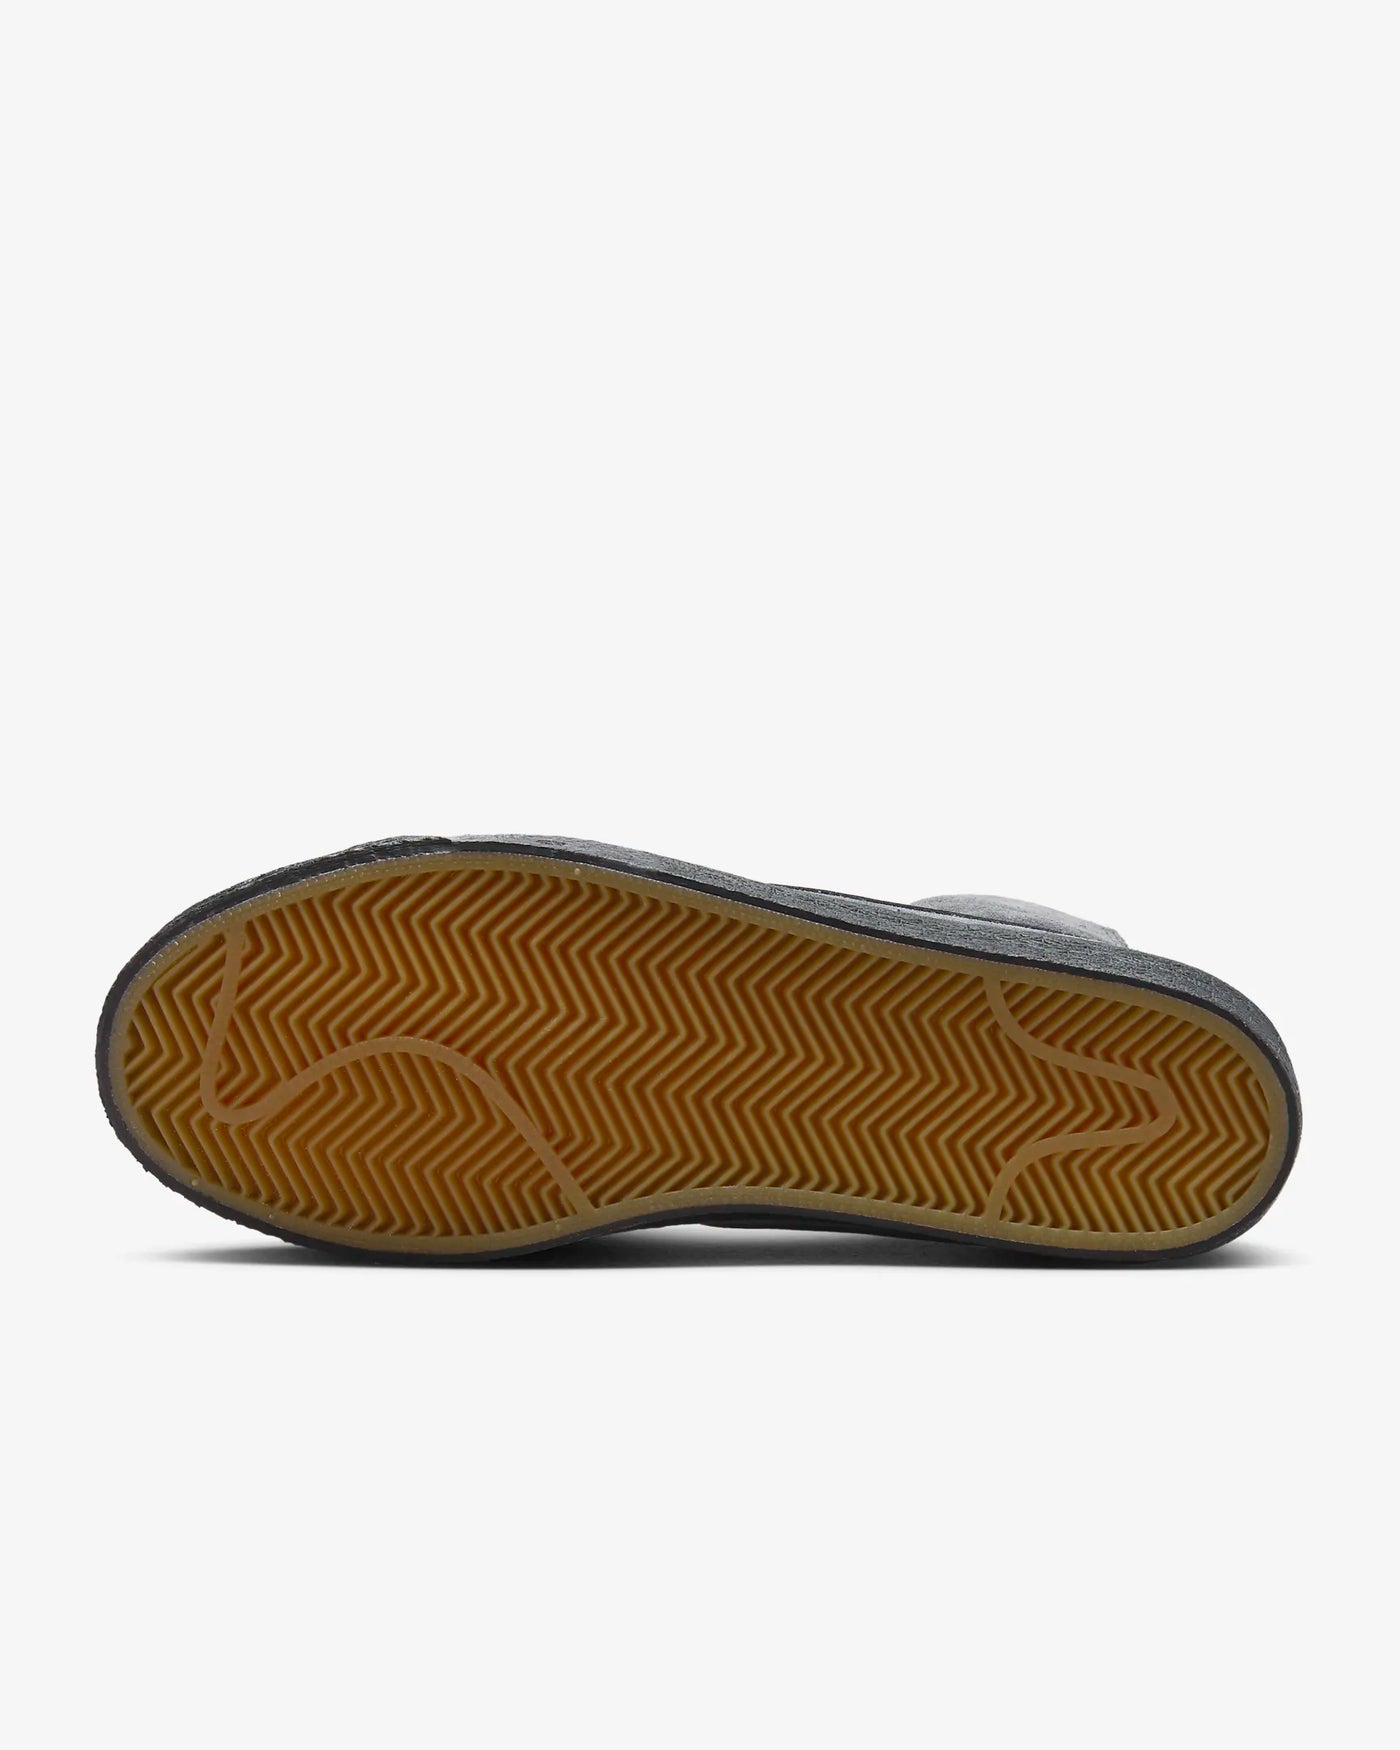 Nike SB FD 0731 - 001 Blazer Mid Shoe - Anthracite / Anthracite / Schwarz / Schwarz